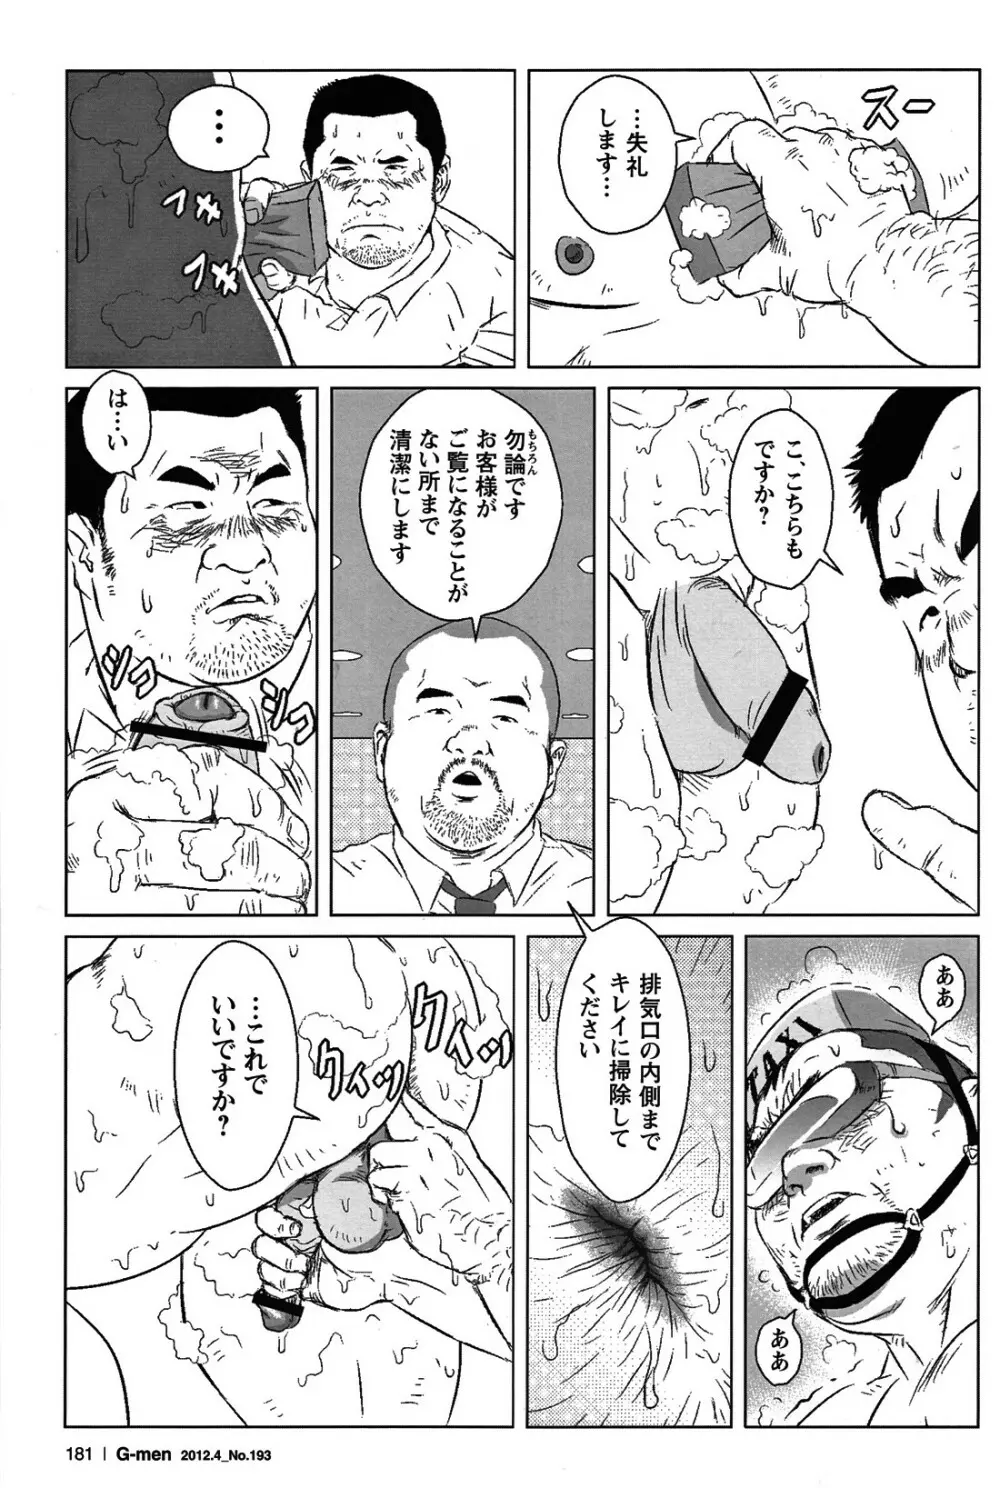 Comic G-men Gaho No.05 167ページ